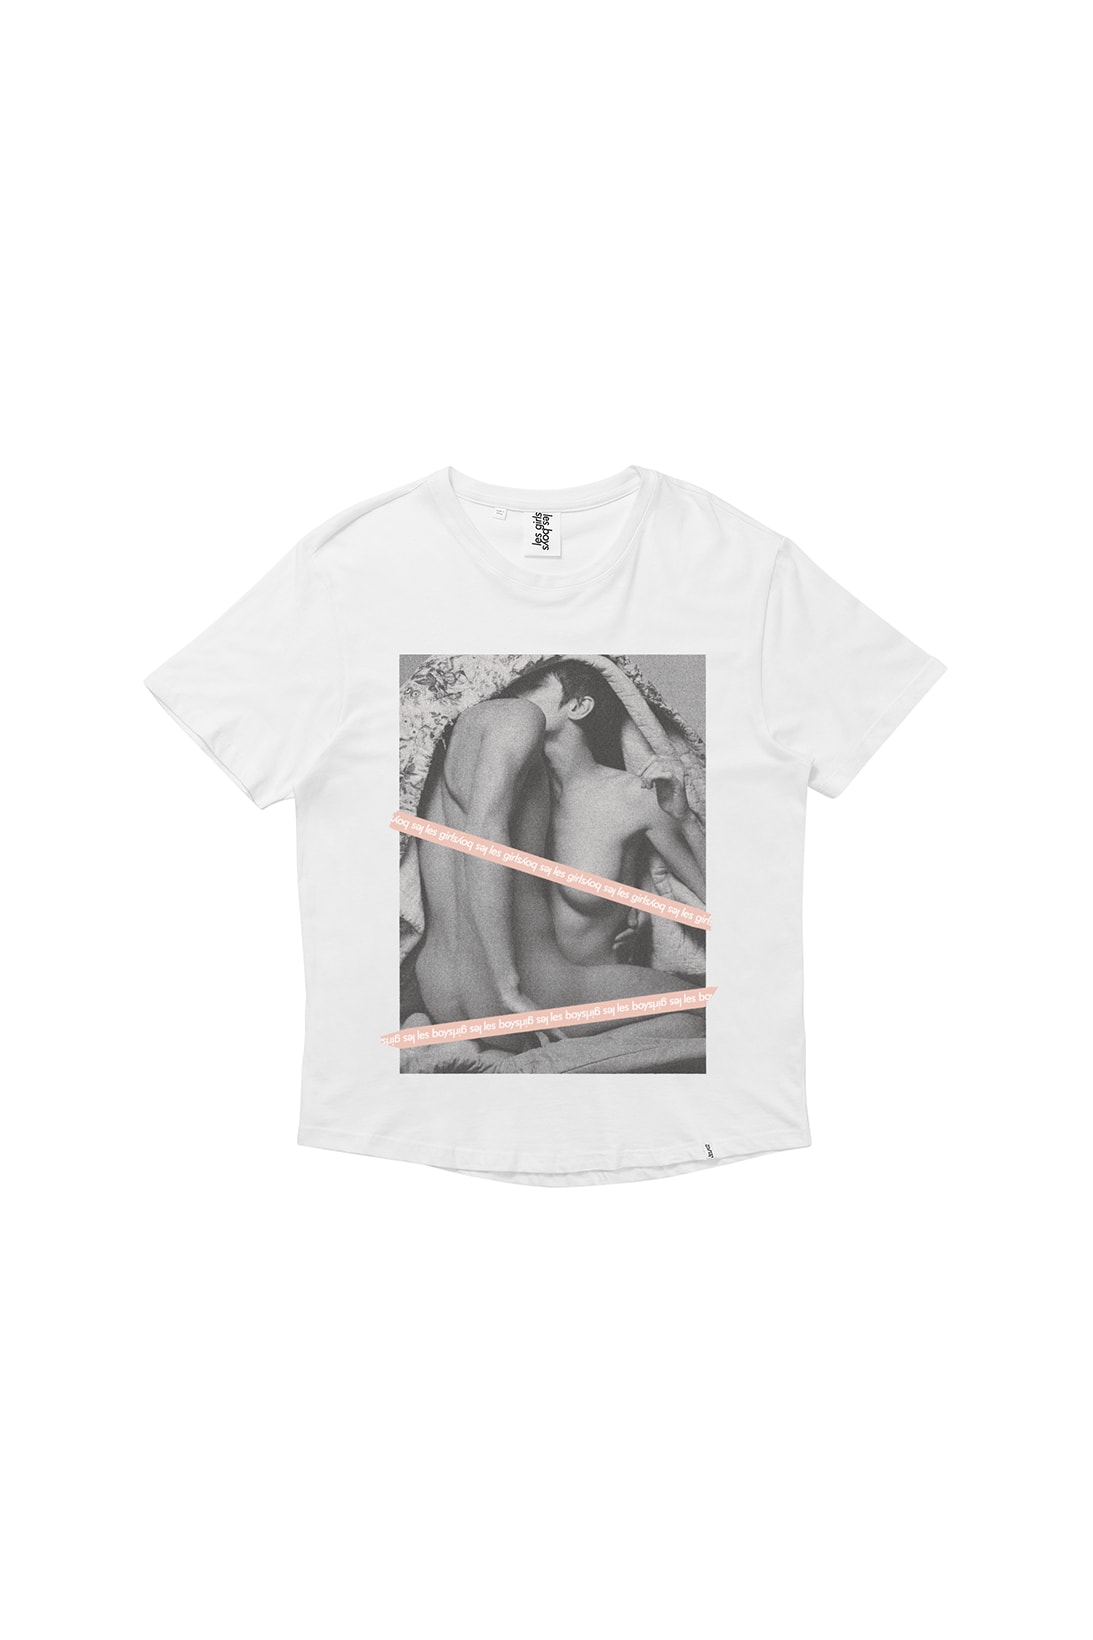 Les Girls Les Boys Censorship T-Shirts Brett Lloyed NSFW